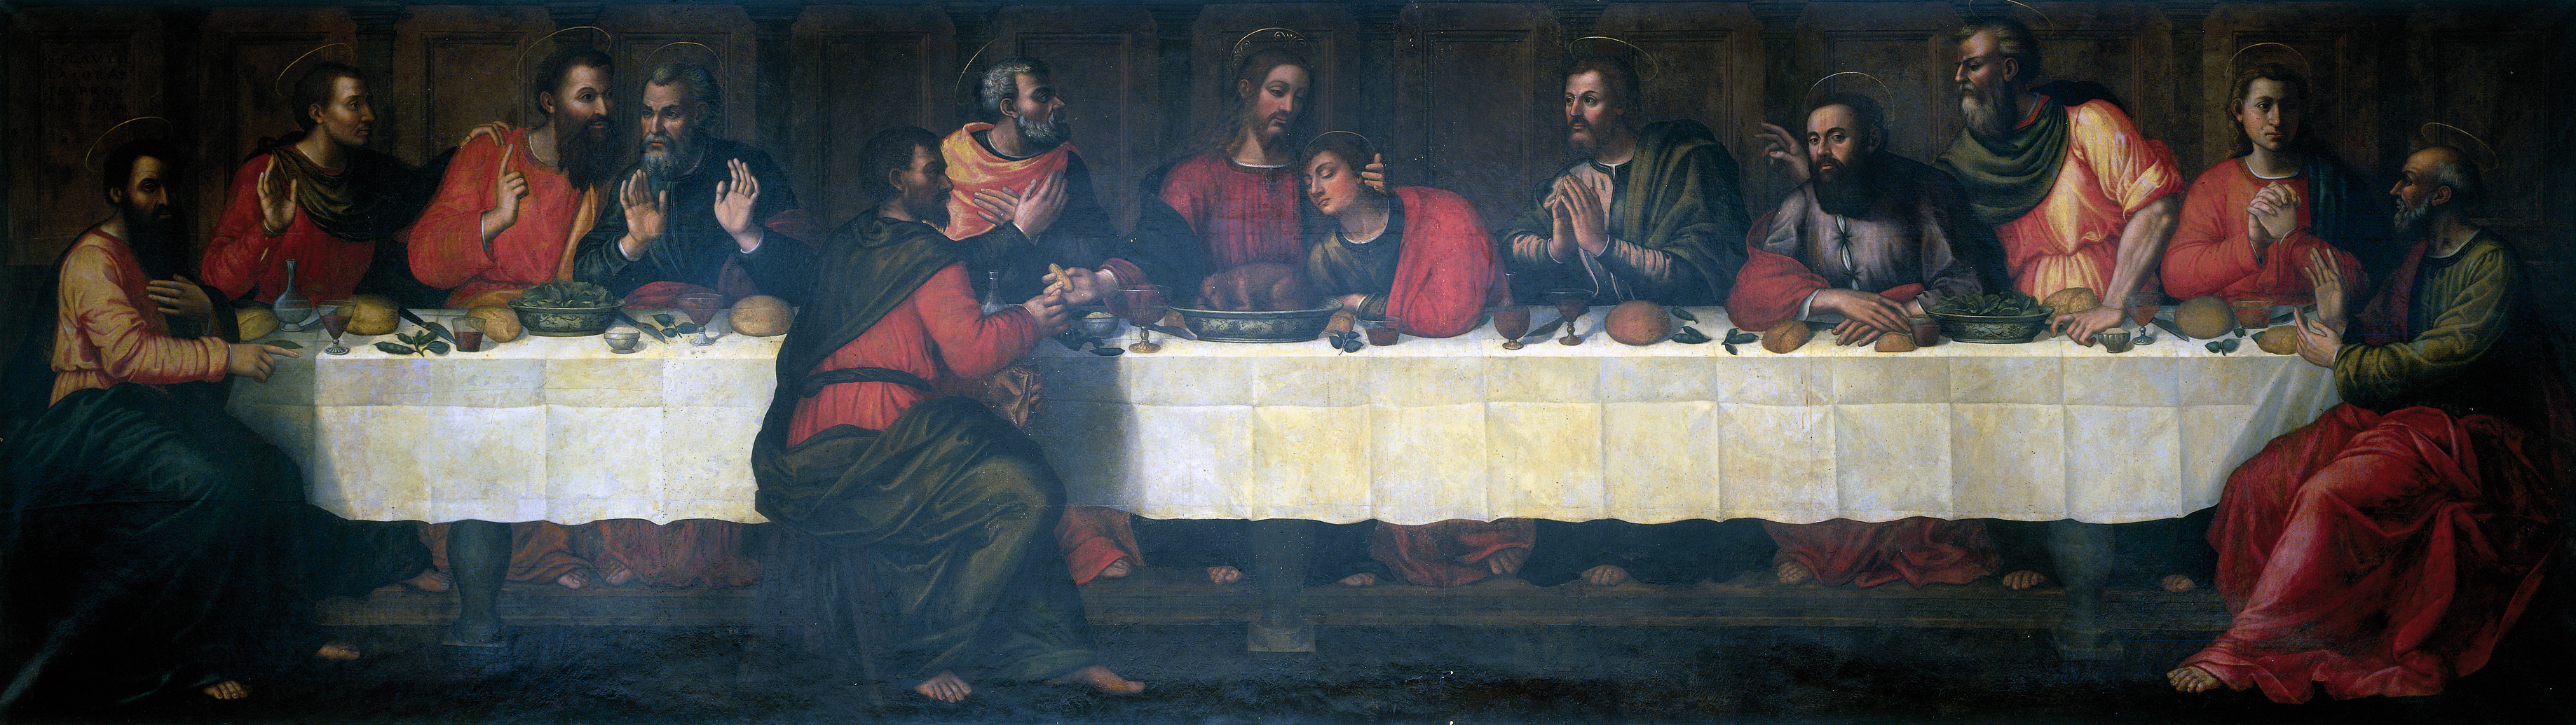 Тайная вечеря by Plautilla Nelli - XVI век 